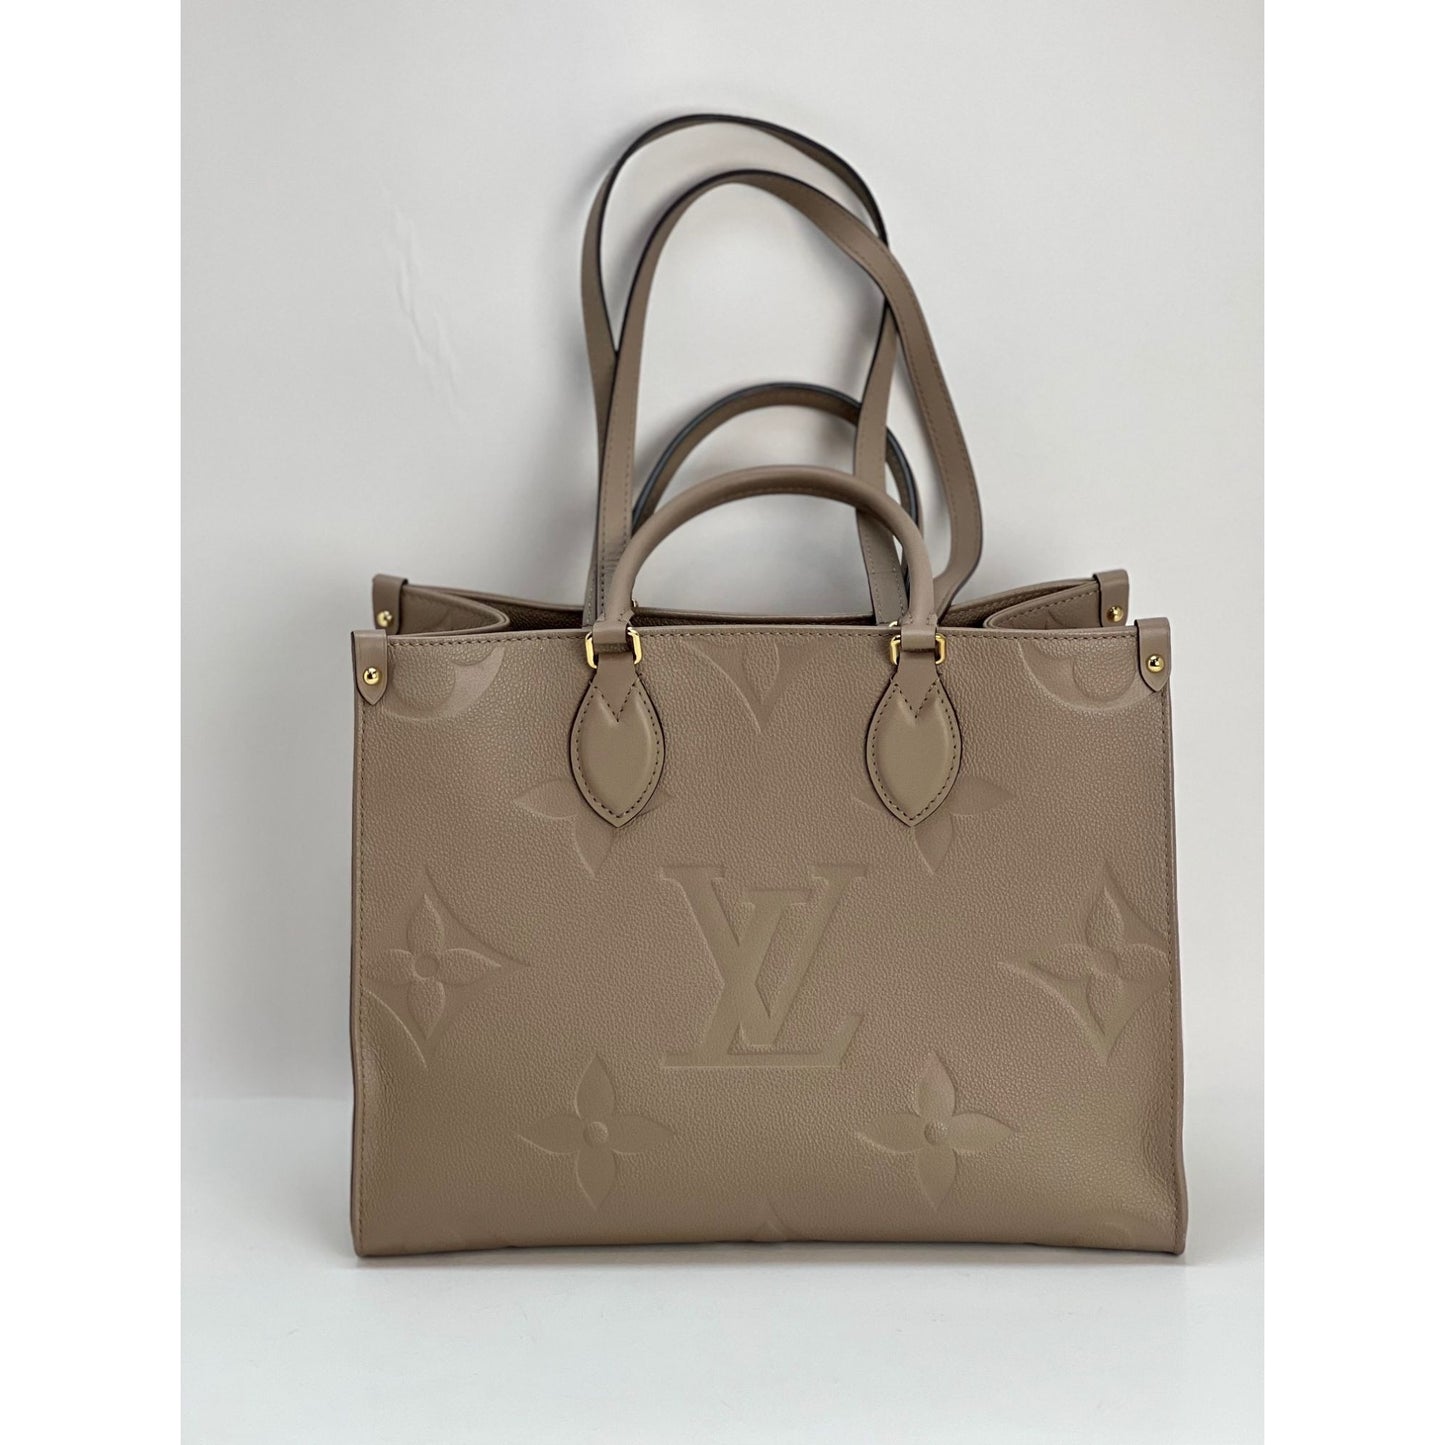 Louis Vuitton OnTheGo mm Empreinte Beige Tote Bag